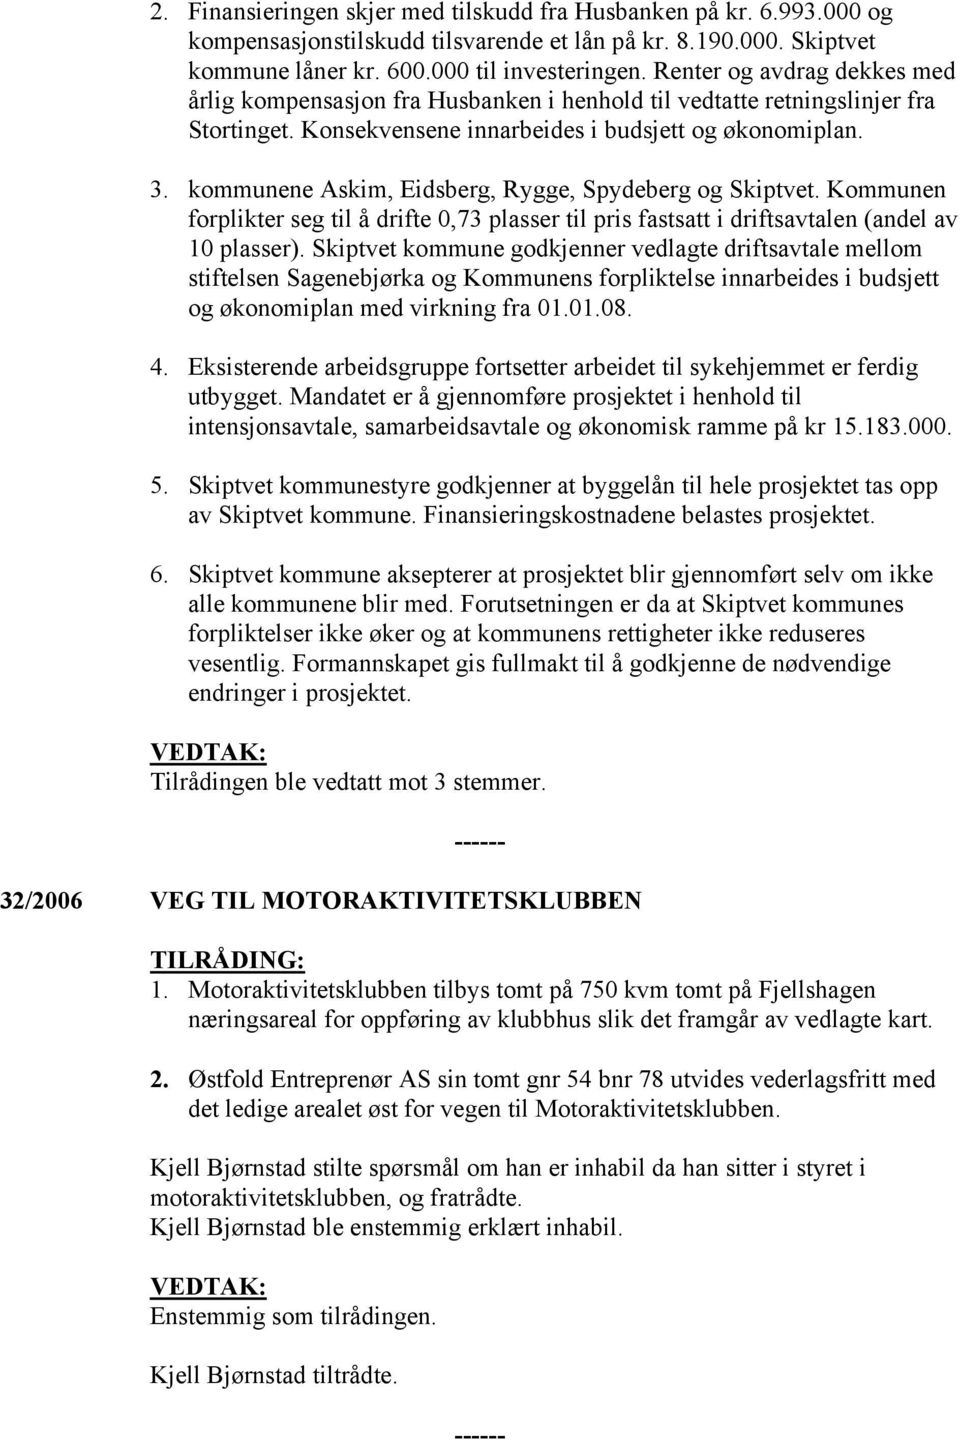 kommunene Askim, Eidsberg, Rygge, Spydeberg og Skiptvet. Kommunen forplikter seg til å drifte 0,73 plasser til pris fastsatt i driftsavtalen (andel av 10 plasser).